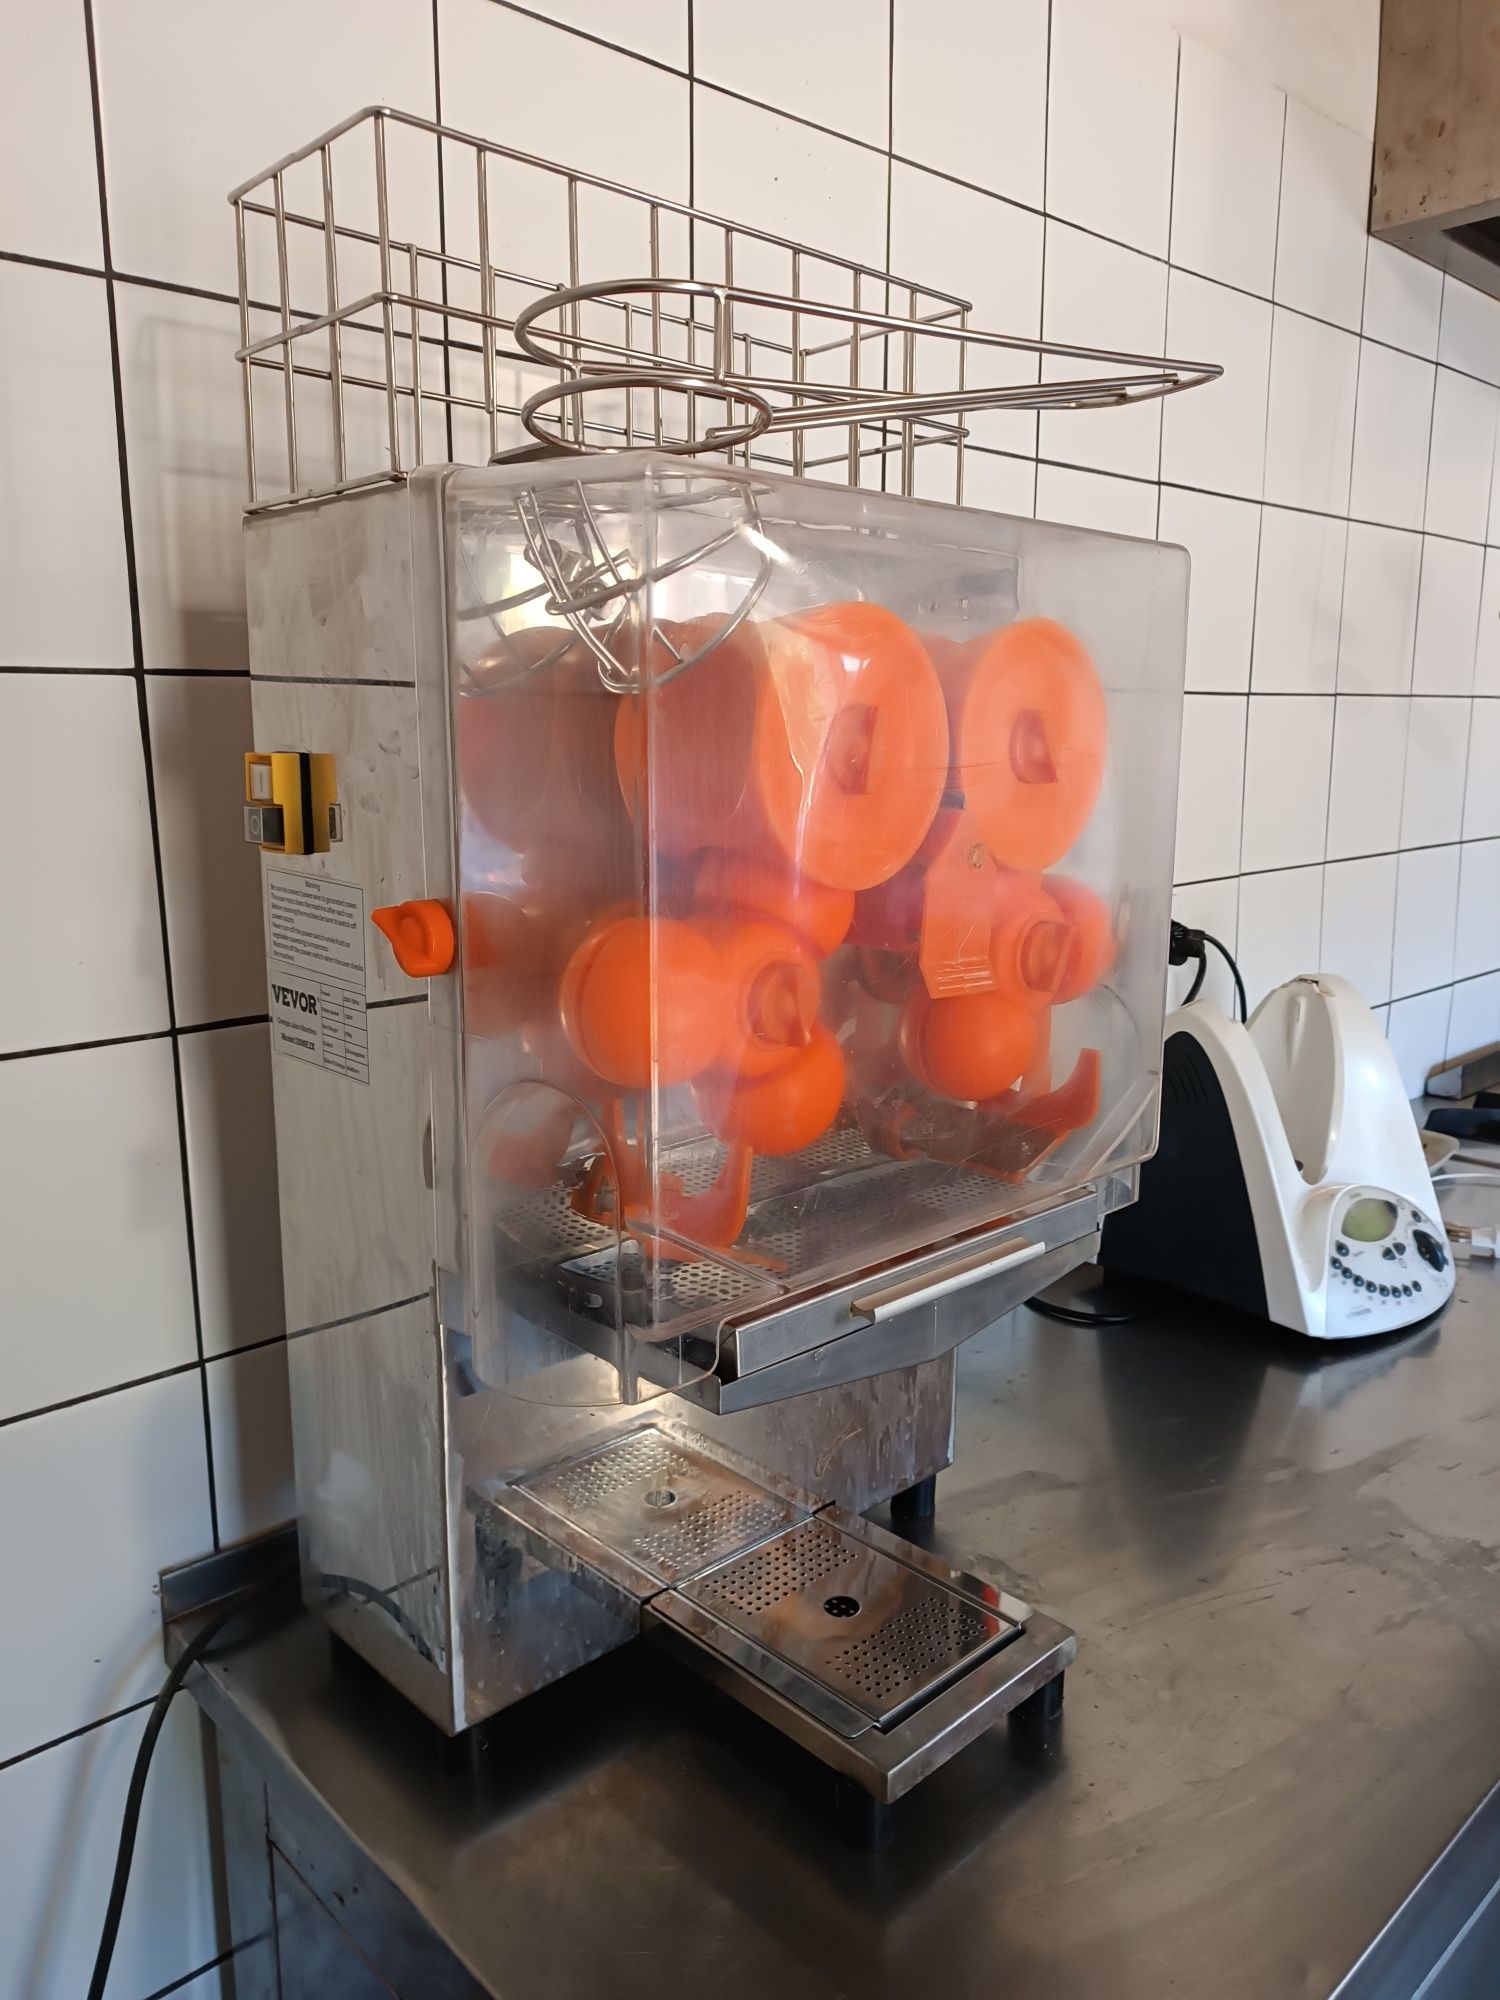 Máquina sumo laranja industrial - com apenas um ano ainda em garantia